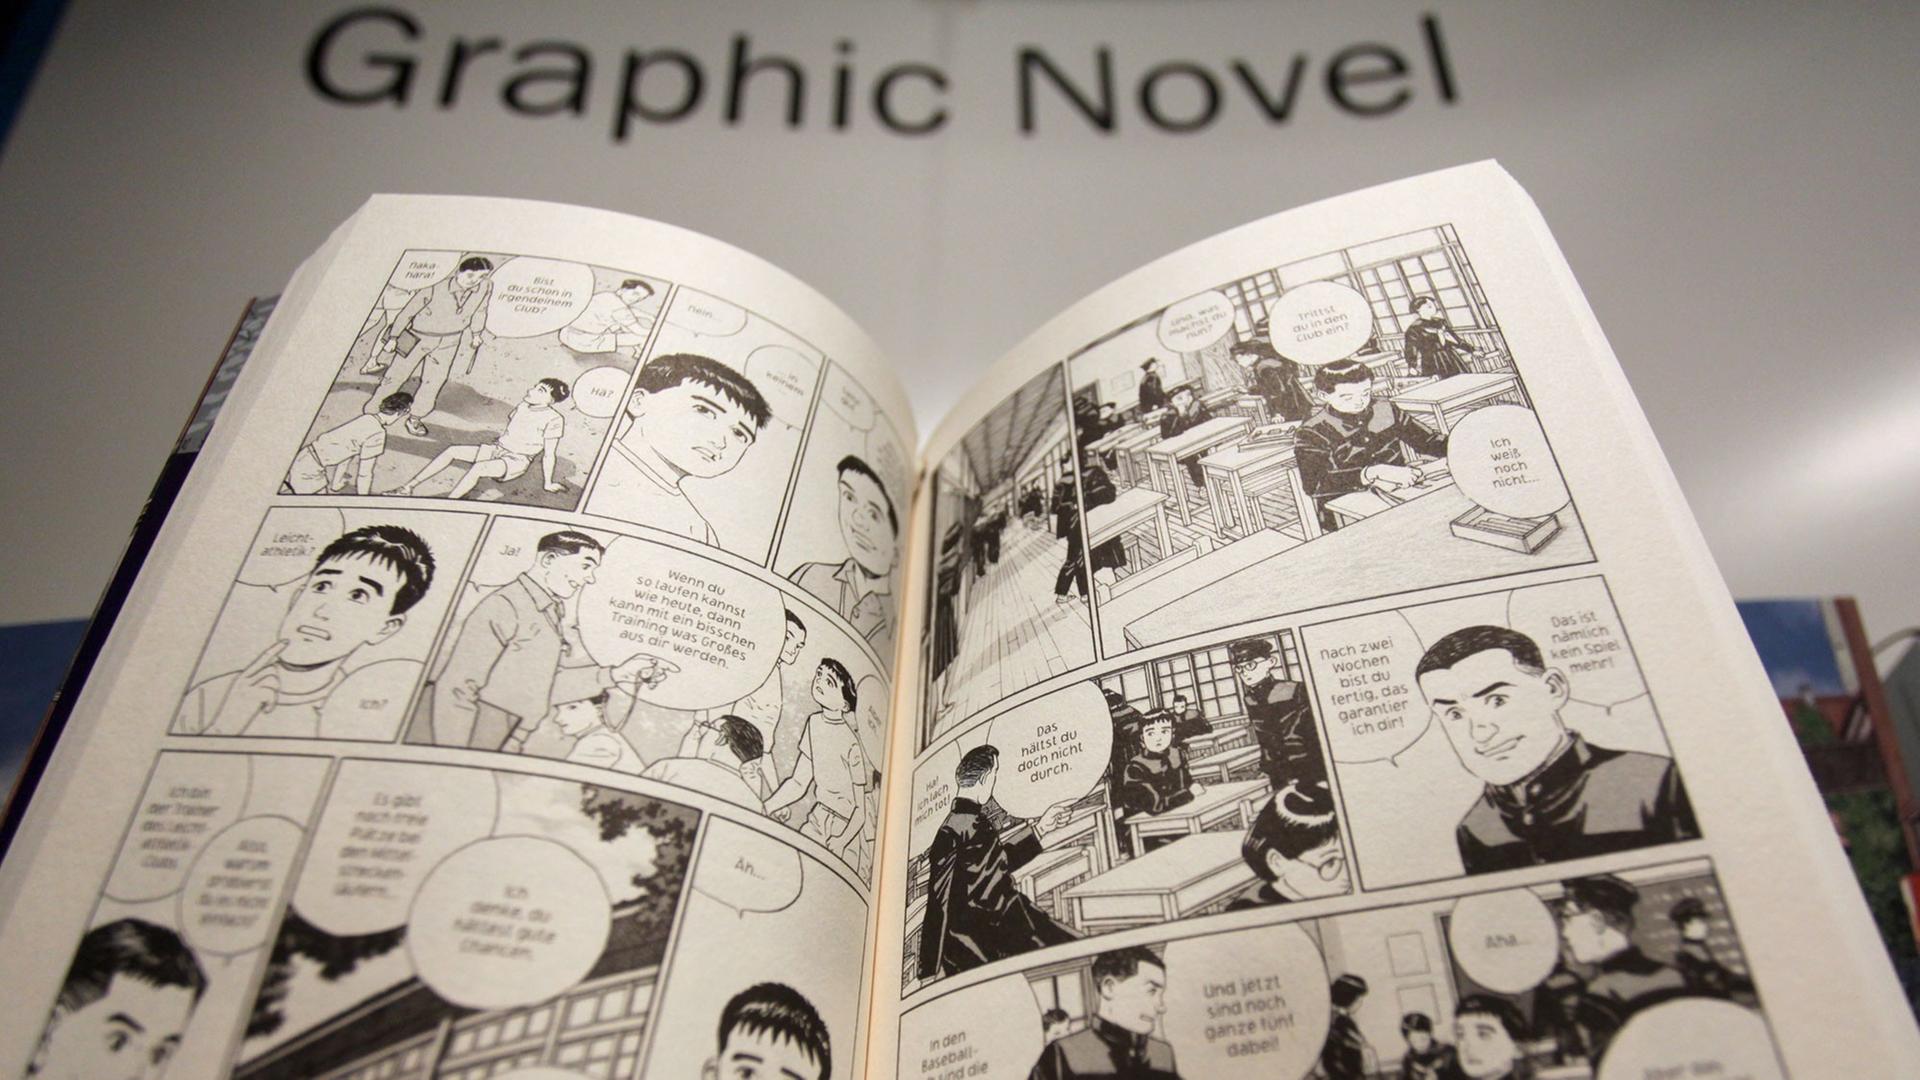 Eine schwarz weiß illustriertes Heft mit in der Mitte aufgeklappten Seiten, darüber der Schriftzug "Graphic Novel".